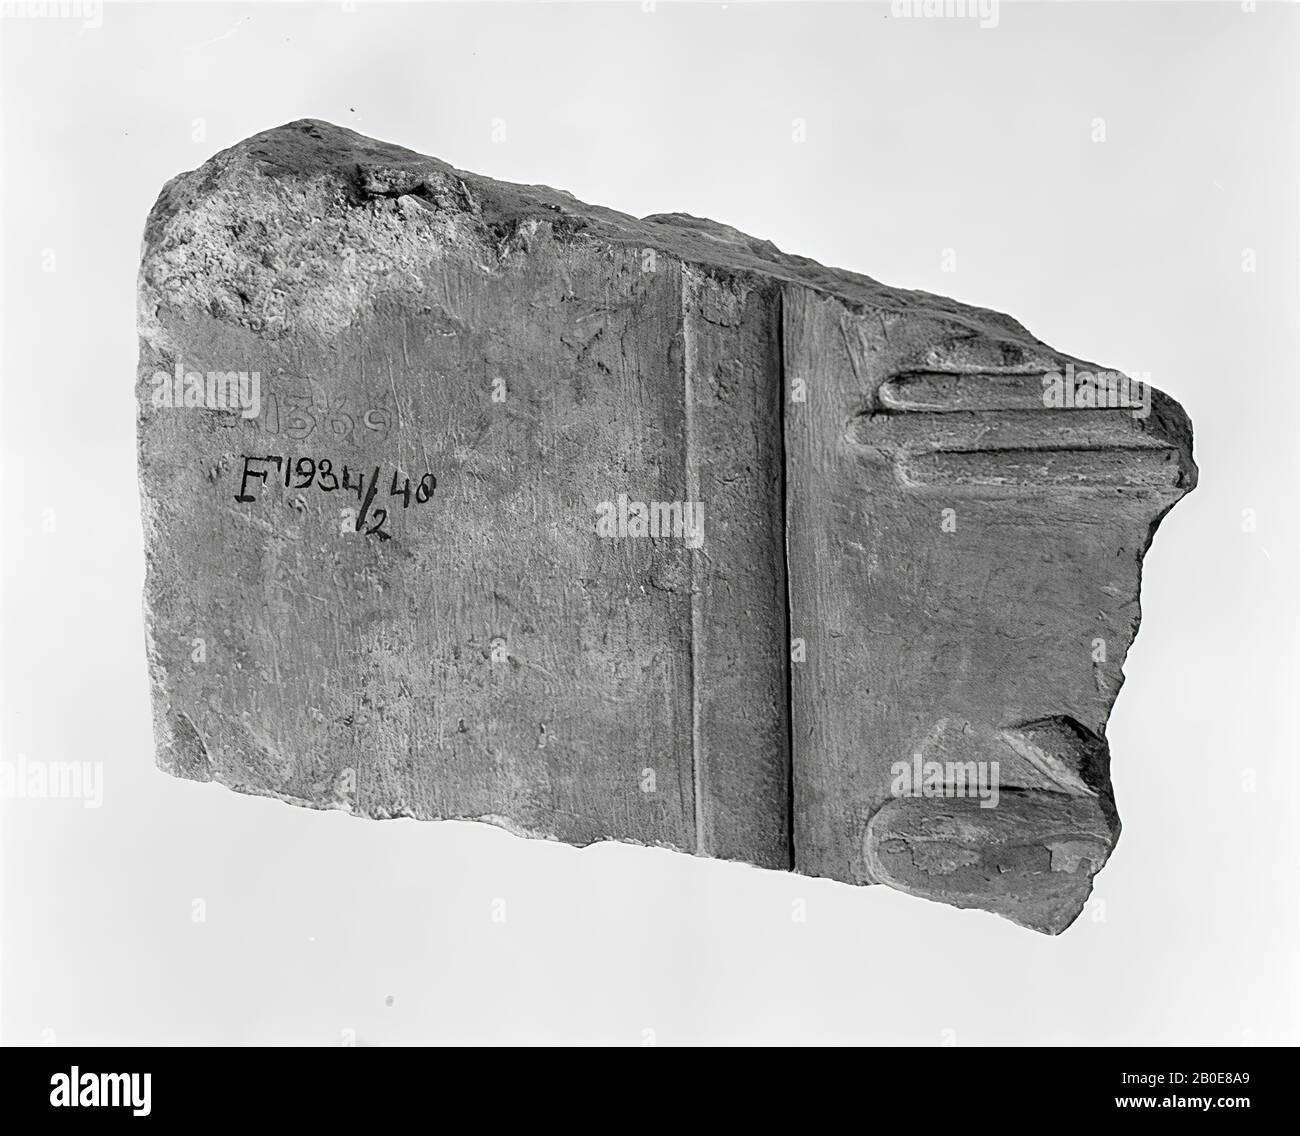 Inscription, relief, calcaire, 12,5 x 17,5 x 6 cm, Royaume du milieu, 12ème dynastie, Egypte Banque D'Images